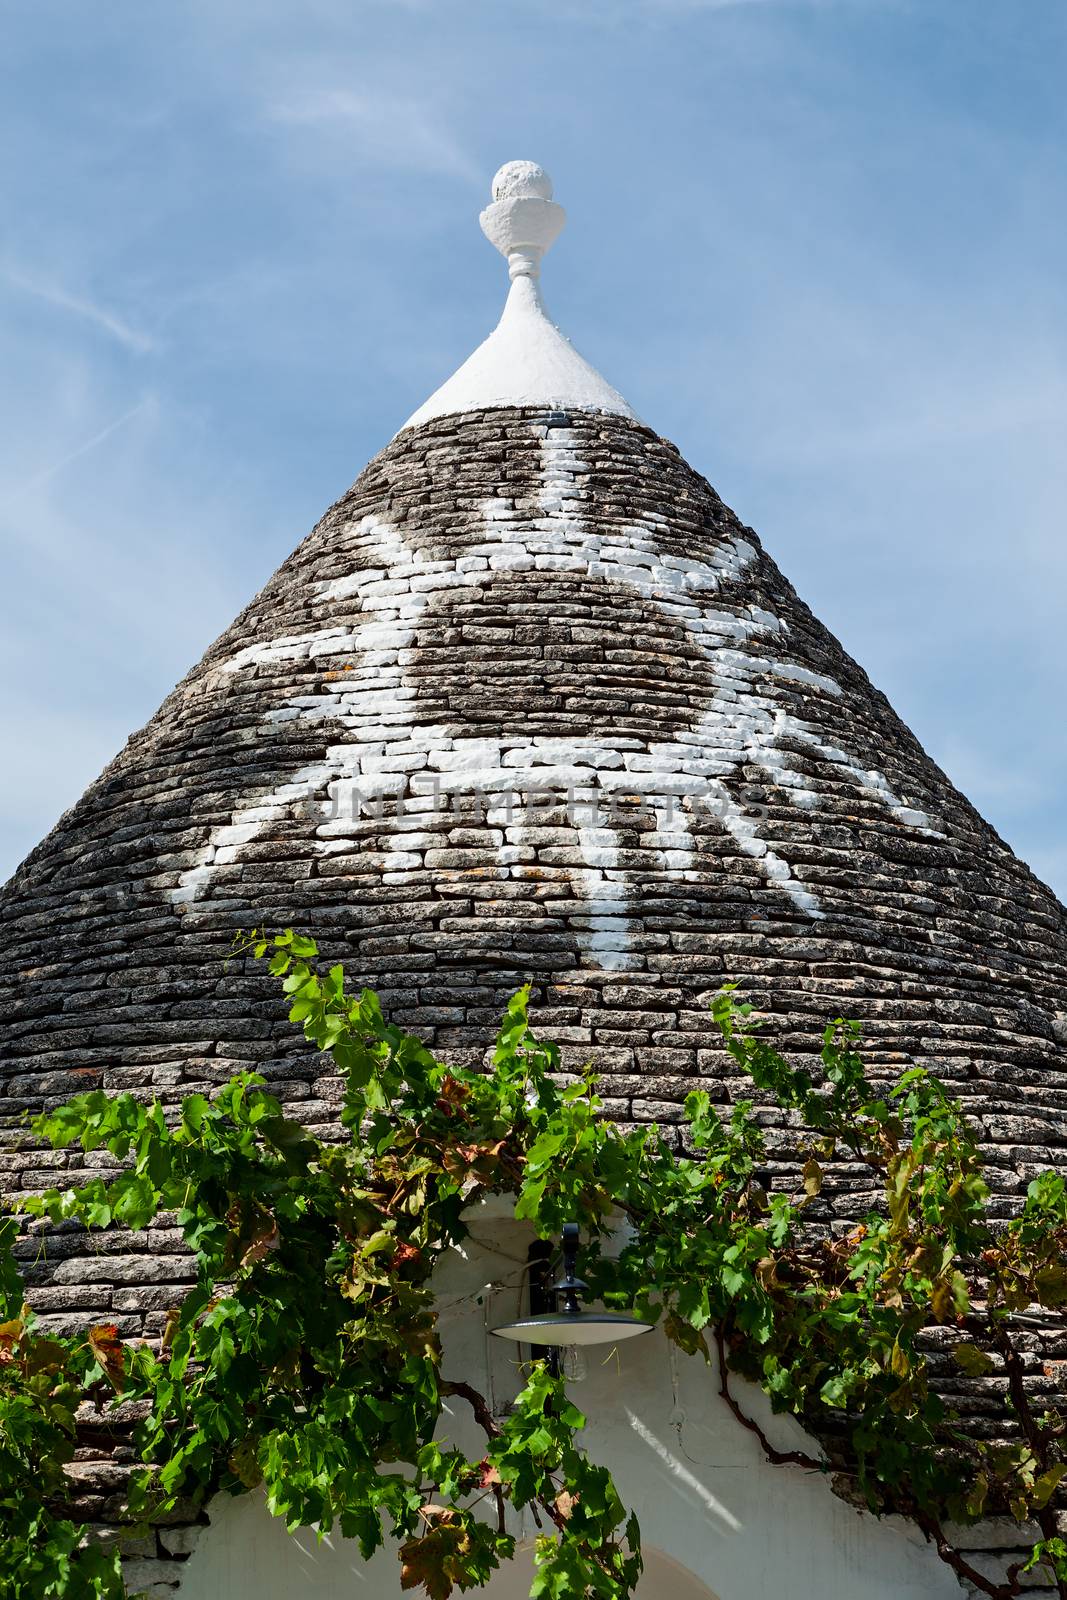 Symbol in the Trullo conical rooftop in Alberobello, Puglia, Ita by LuigiMorbidelli